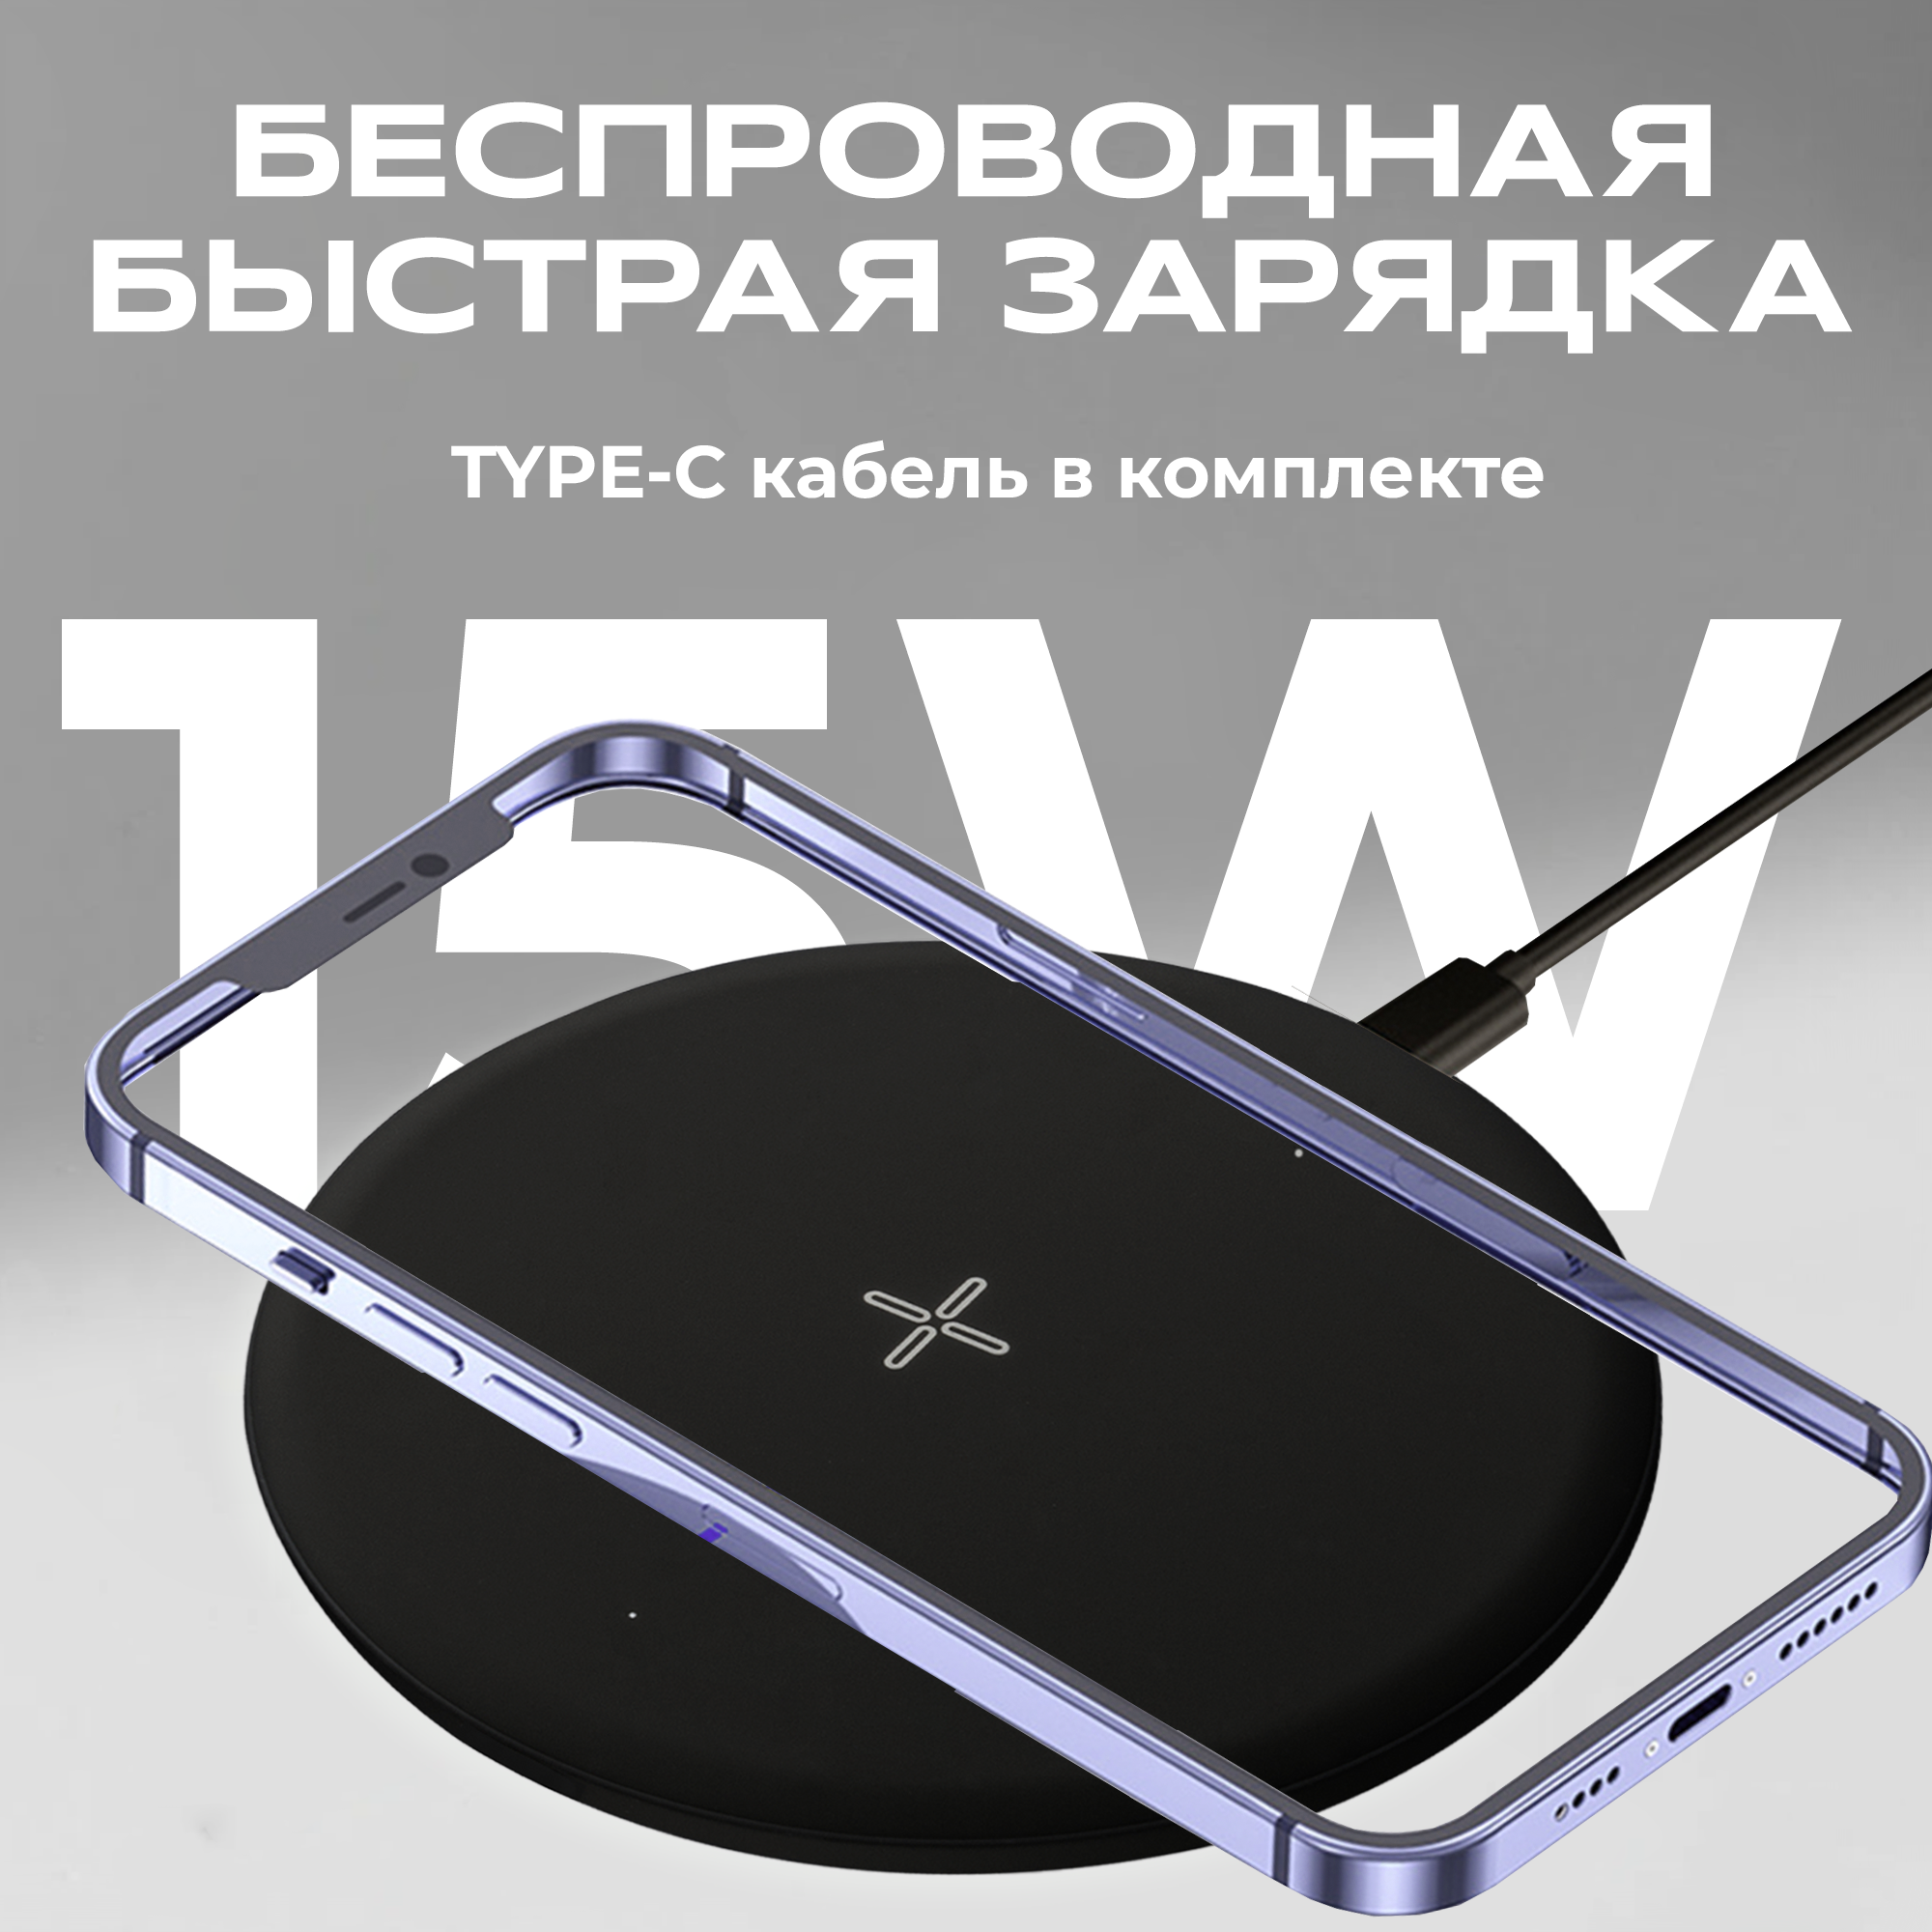 Беспроводная зарядка для айфона с кабелем Type-C, WALKER, WH-51, 15Вт, сетевое зарядное устройство для телефона на iphone, самсунг, xiaomi, черная